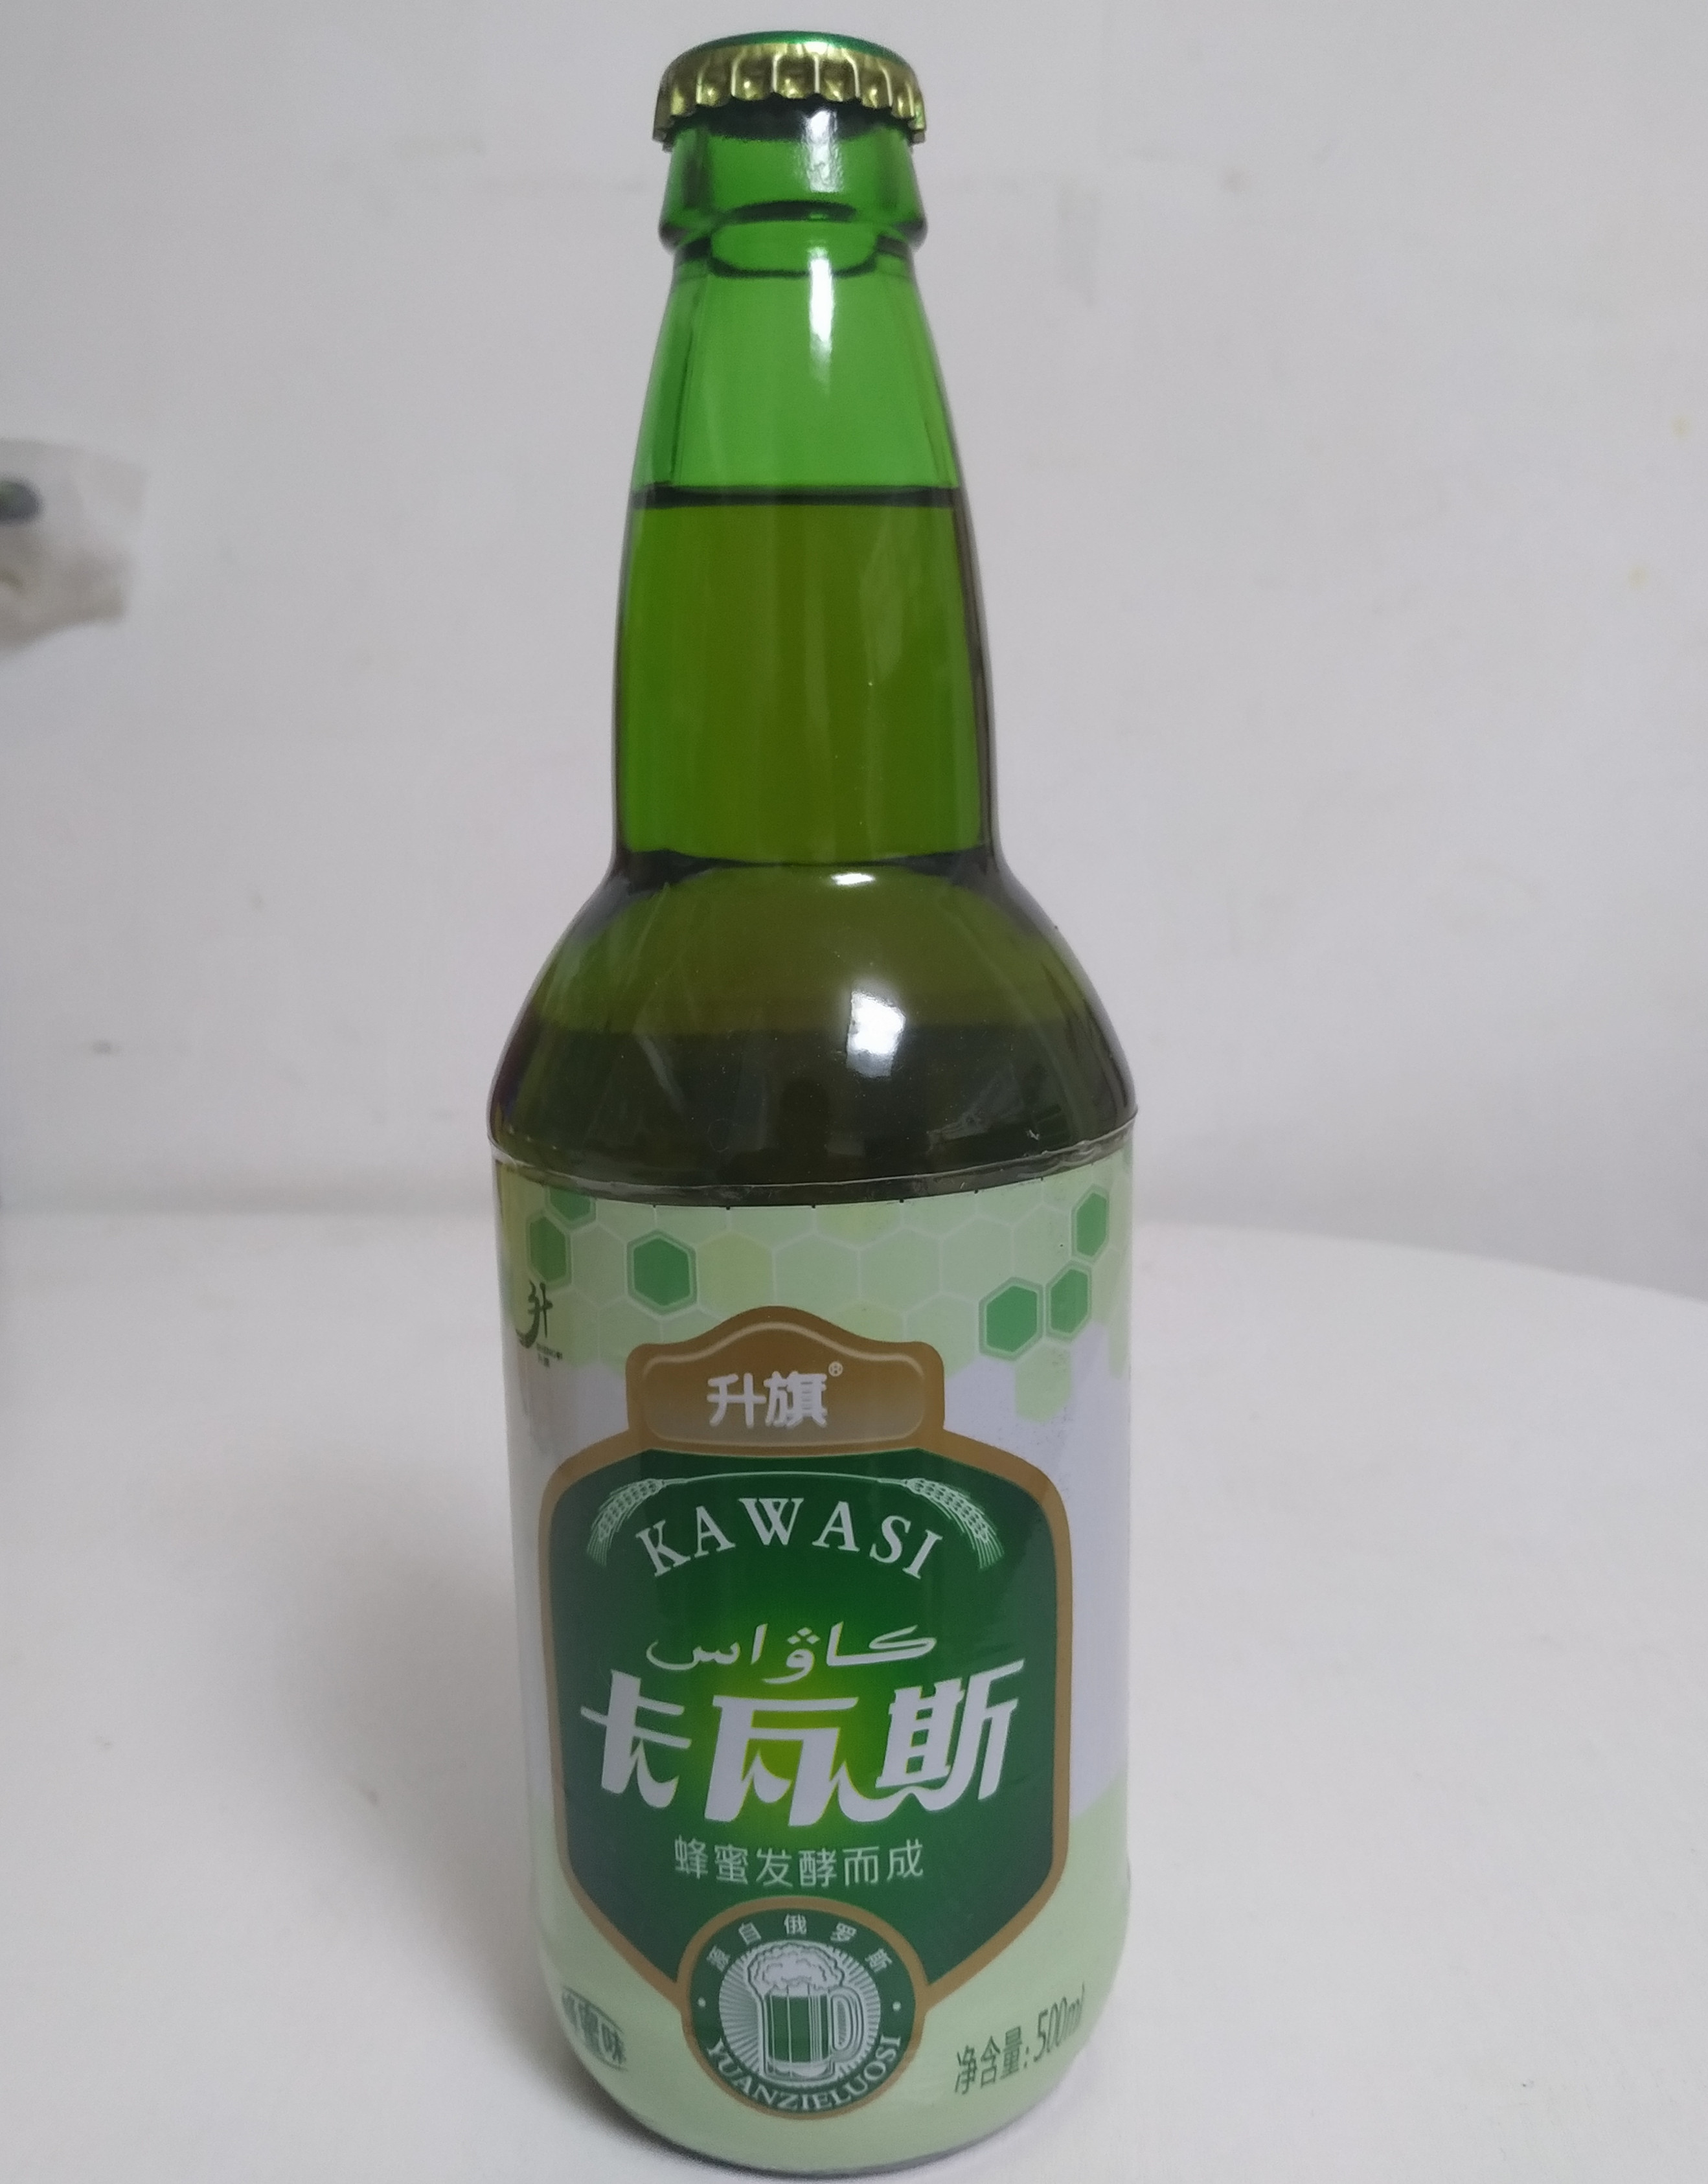 新疆升旗卡瓦斯蜂蜜味碳酸饮料KAWASI 源自俄罗斯500毫升新疆特产